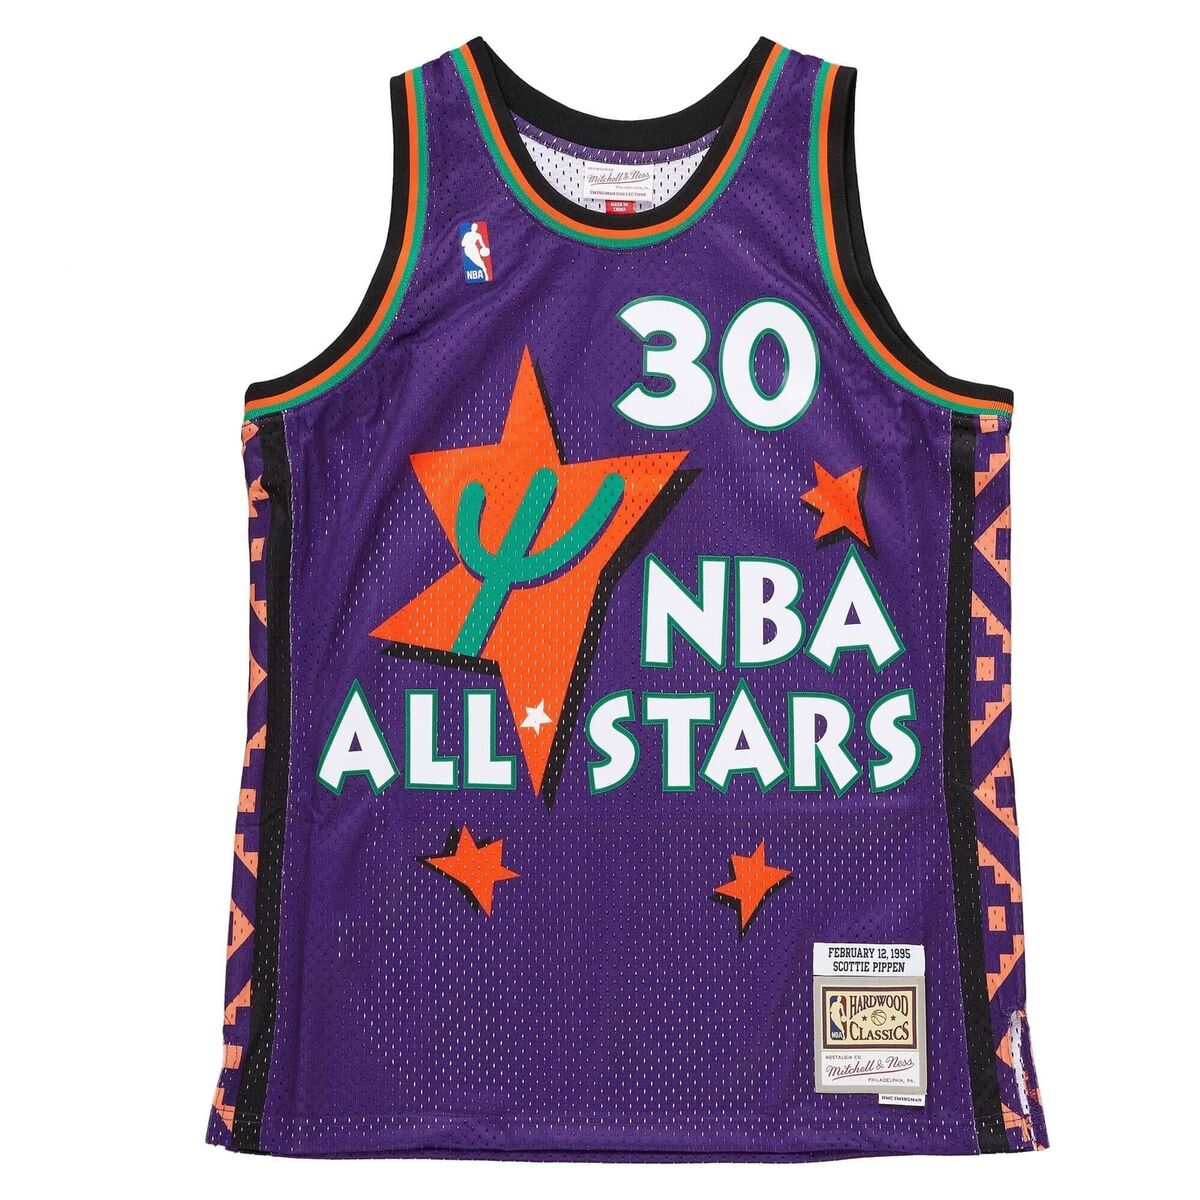 Camiseta nba de pippen All star 1995